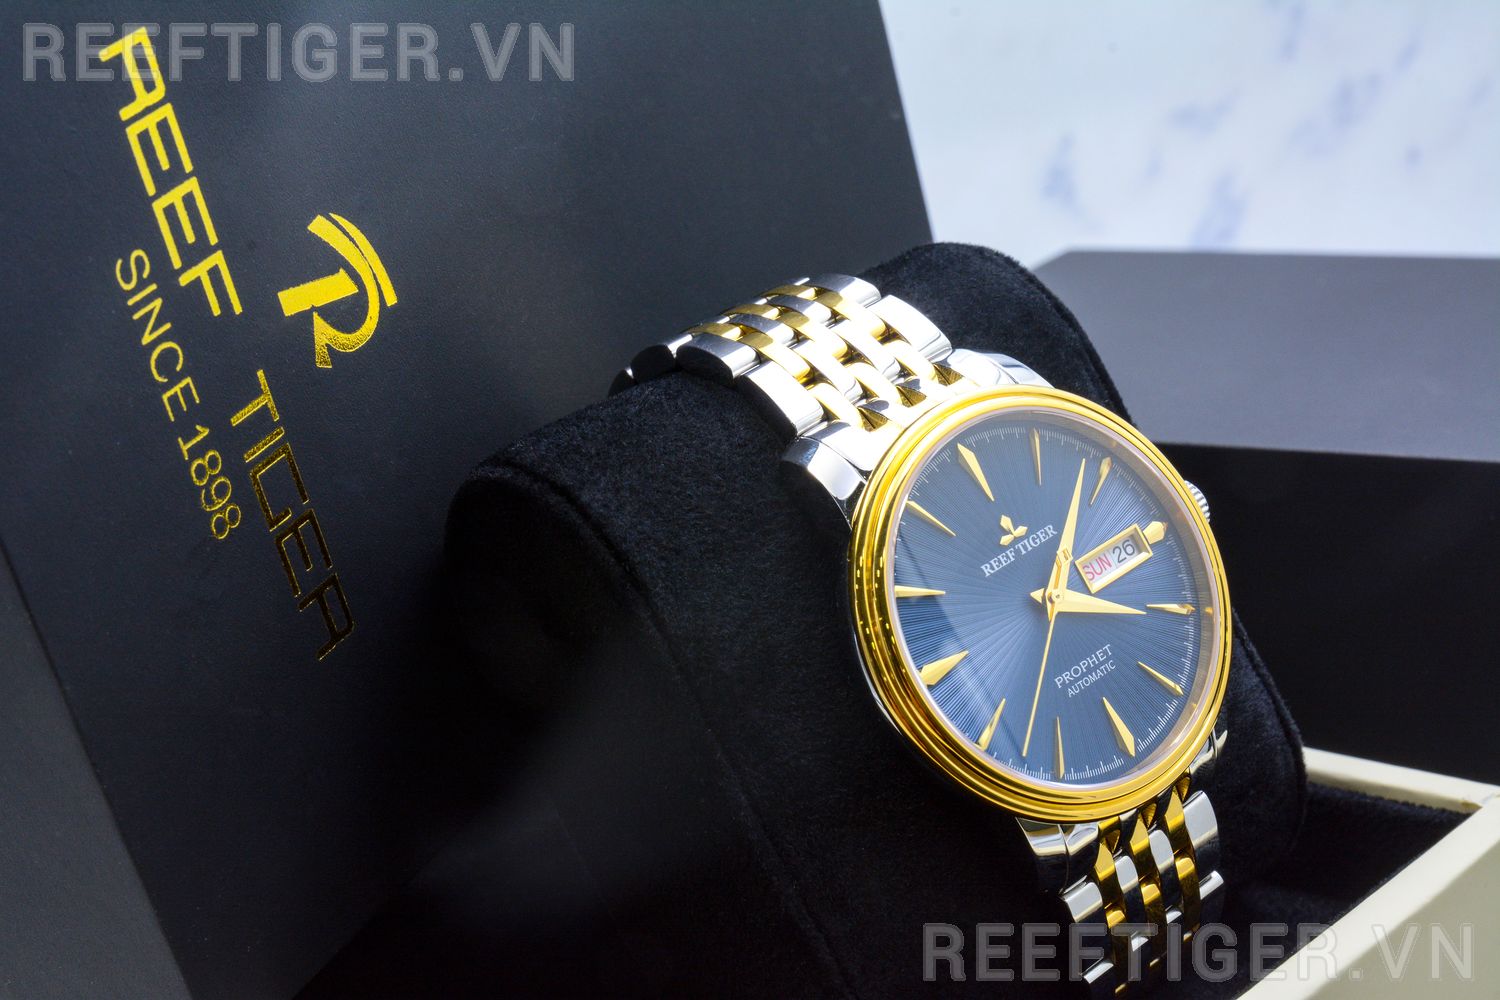 Đồng hồ ReĐồng hồ Reef Tiger RGA8236-GLTef Tiger RGA8236-GLT